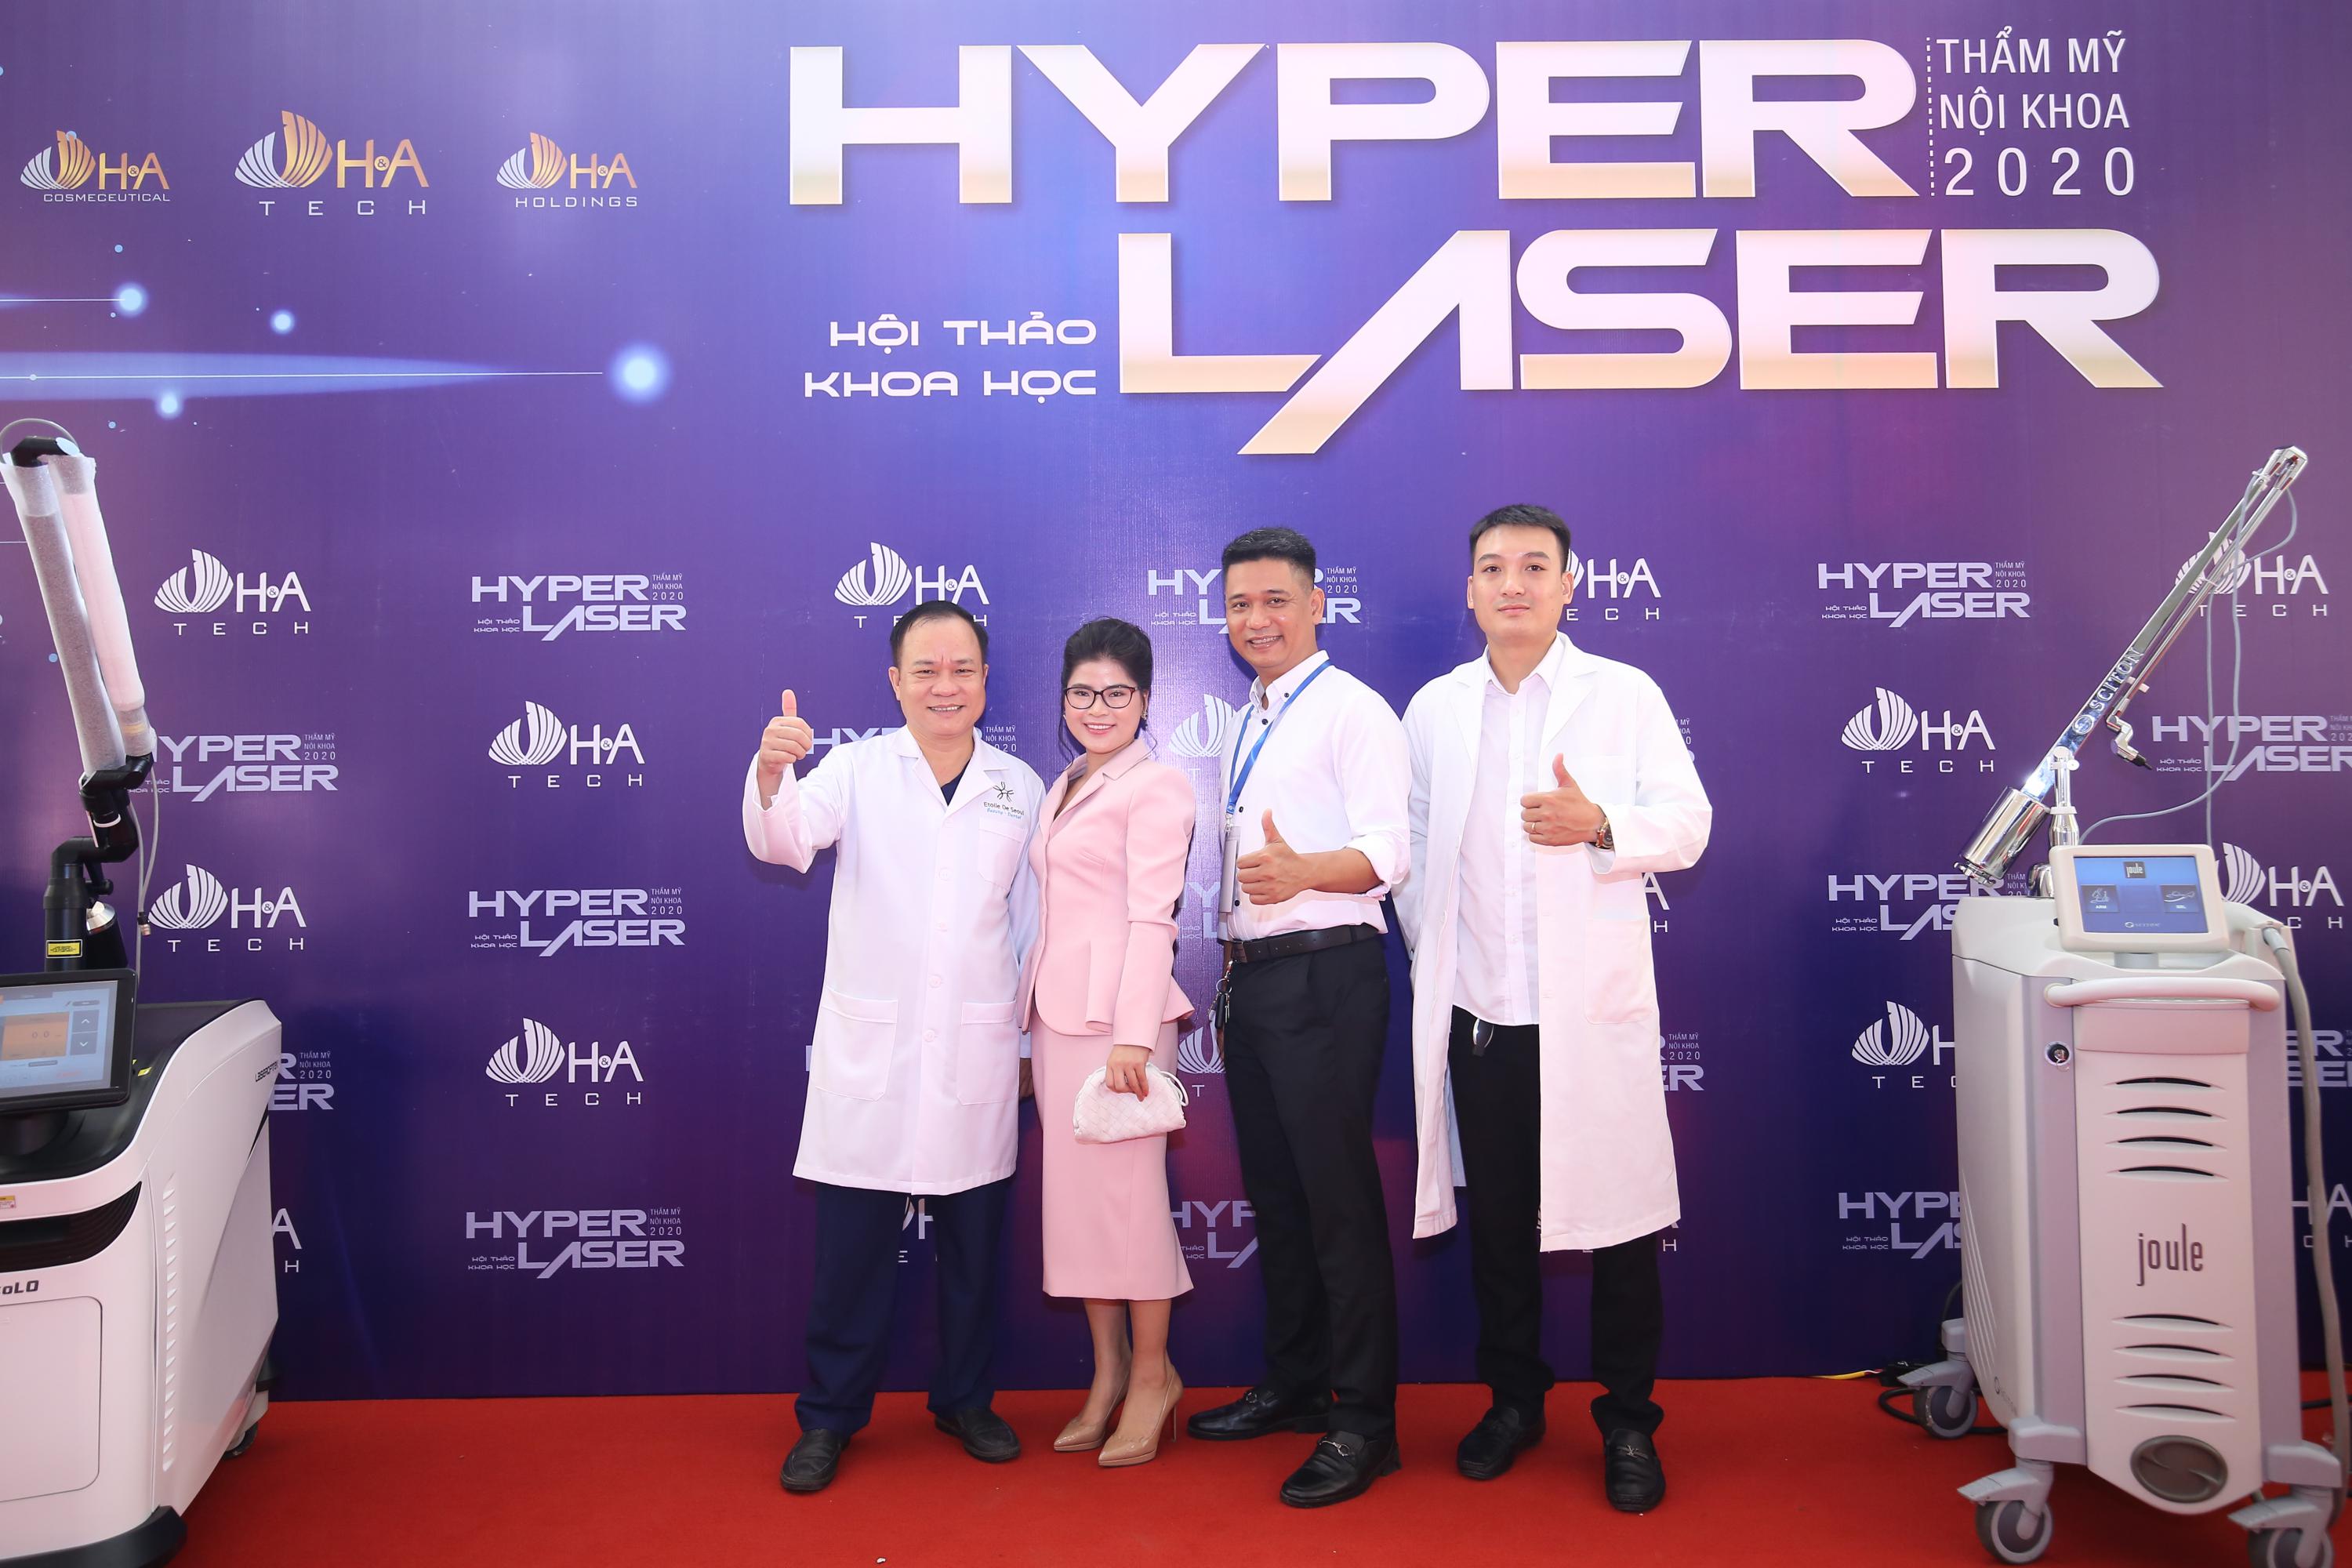 Các bác sĩ nổi tiếng hội tụ tại hội thảo Hyper Laser 2020